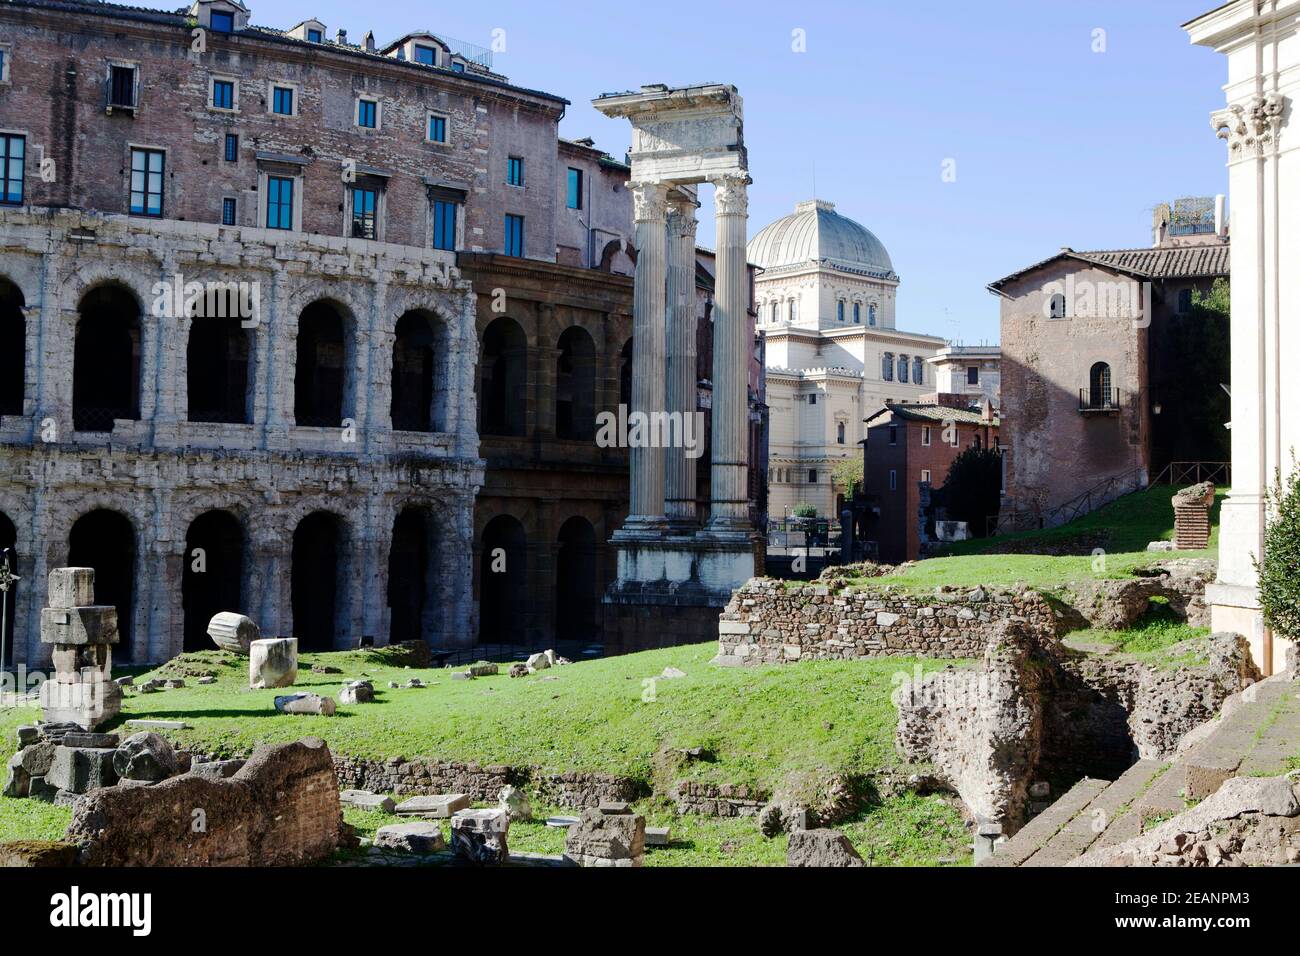 Teatro di Marcello (Theatre of Marcellus), the column of the Apollo temple and the square dome of the Synagogue, Rome Stock Photo